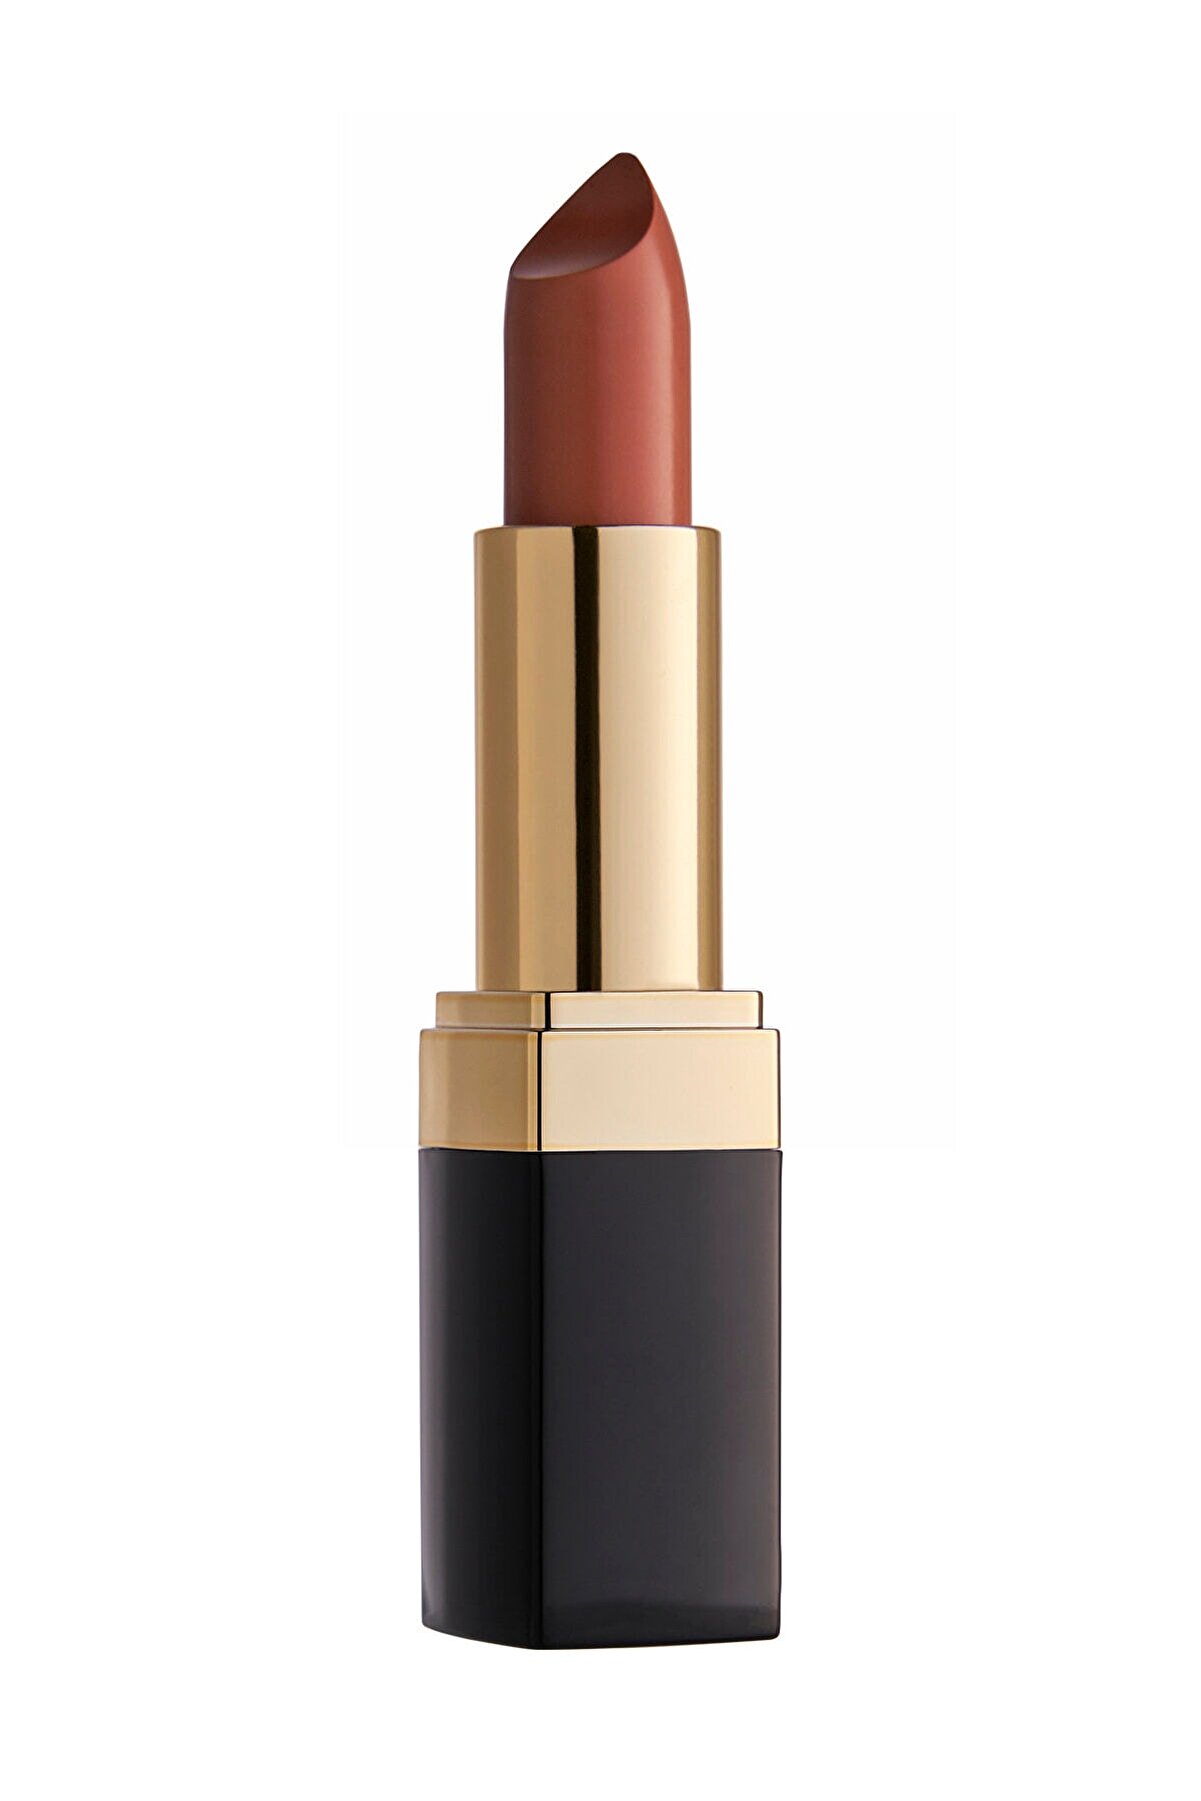 رژلب جامد مدل Lipstick رنگ قهوه ای شماره 51 گلدن رز Golden Rose شیکولات